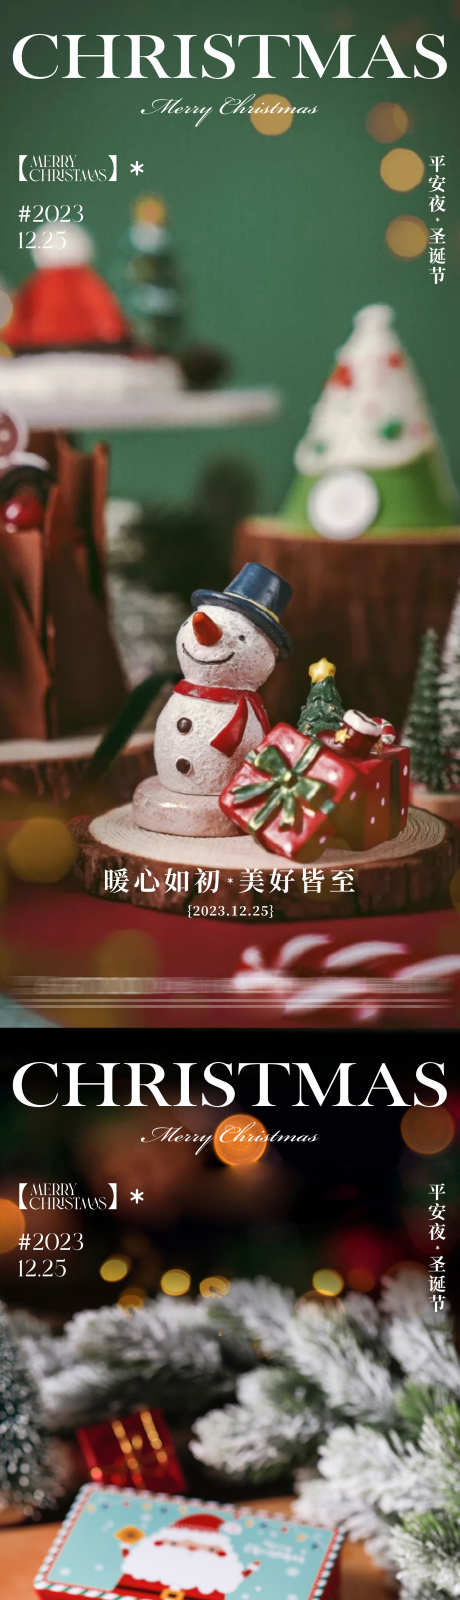 地产圣诞节海报_源文件下载_CDR格式_2149X9605像素-排版,海报,地产,氛围感,圣诞树,雪人,圣诞节-作品编号:2023122011567981-志设-zs9.com